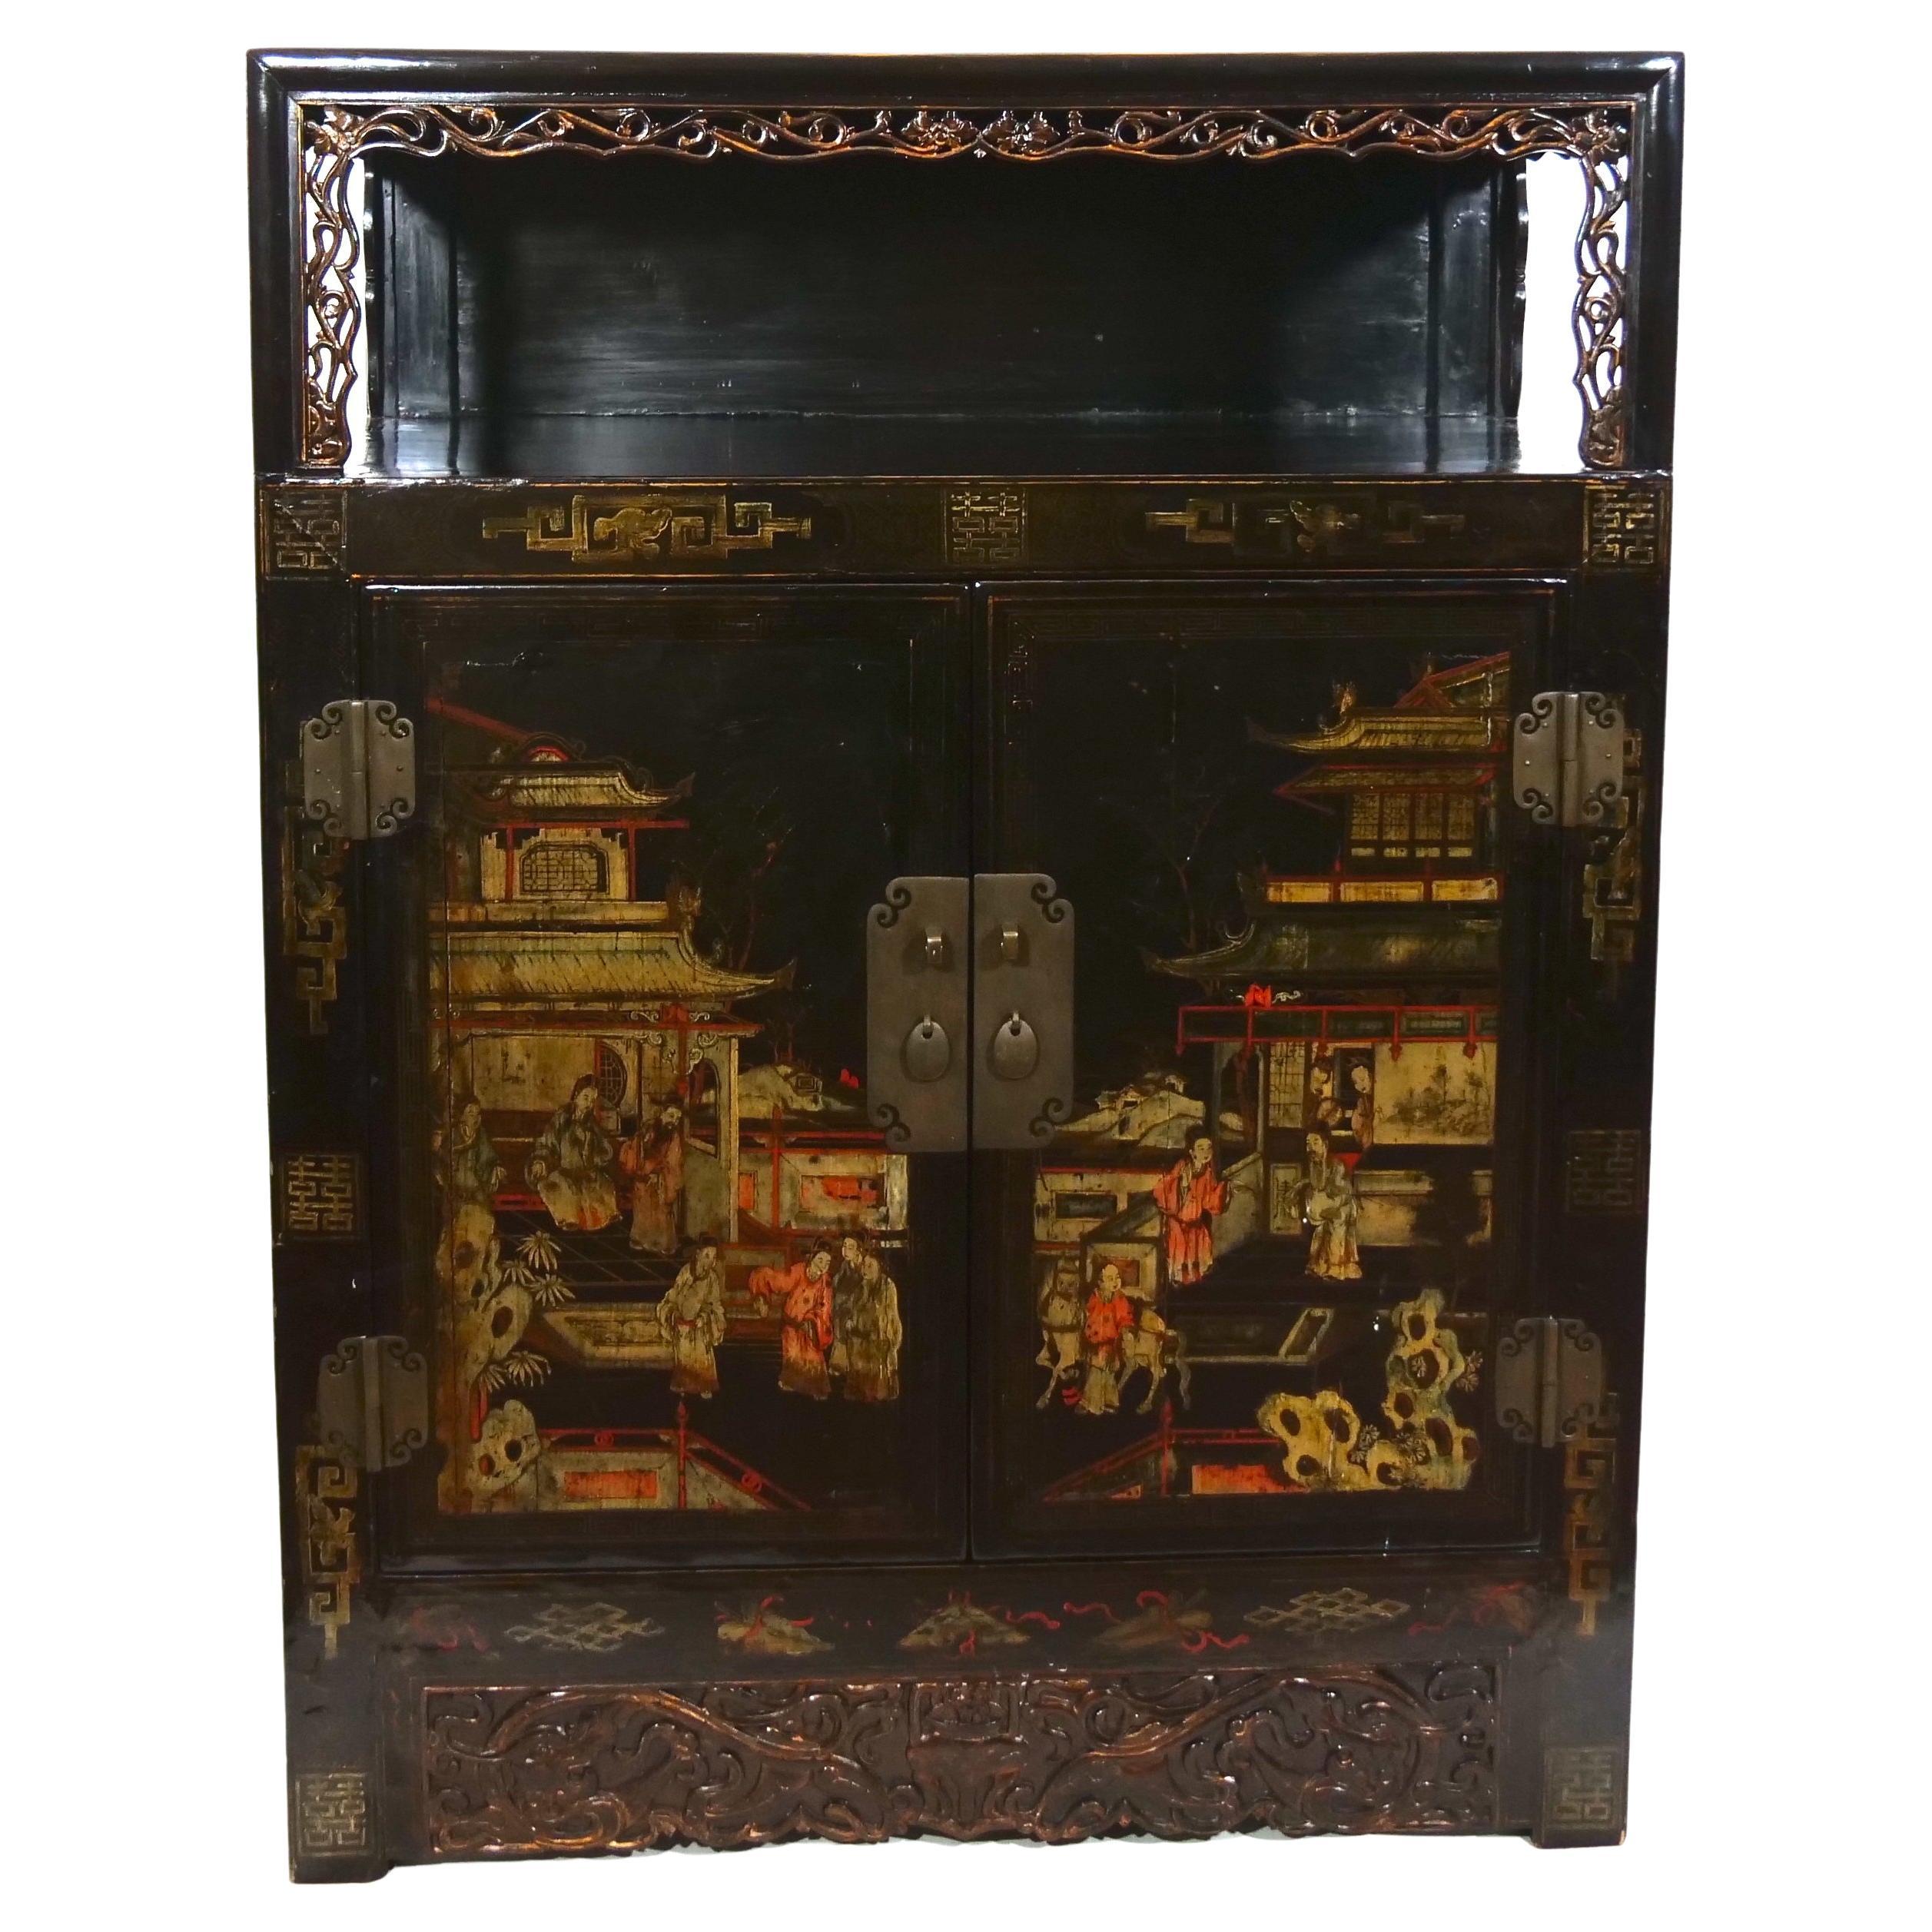 Vitrine en bois laqué noir peint à la main, deux pièces, de style chinoiserie, datant du début du 20e siècle. Le meuble comprend un coffre amovible avec différentes scènes de chinoiseries peintes à la main, deux portes d'entrée et un compartiment